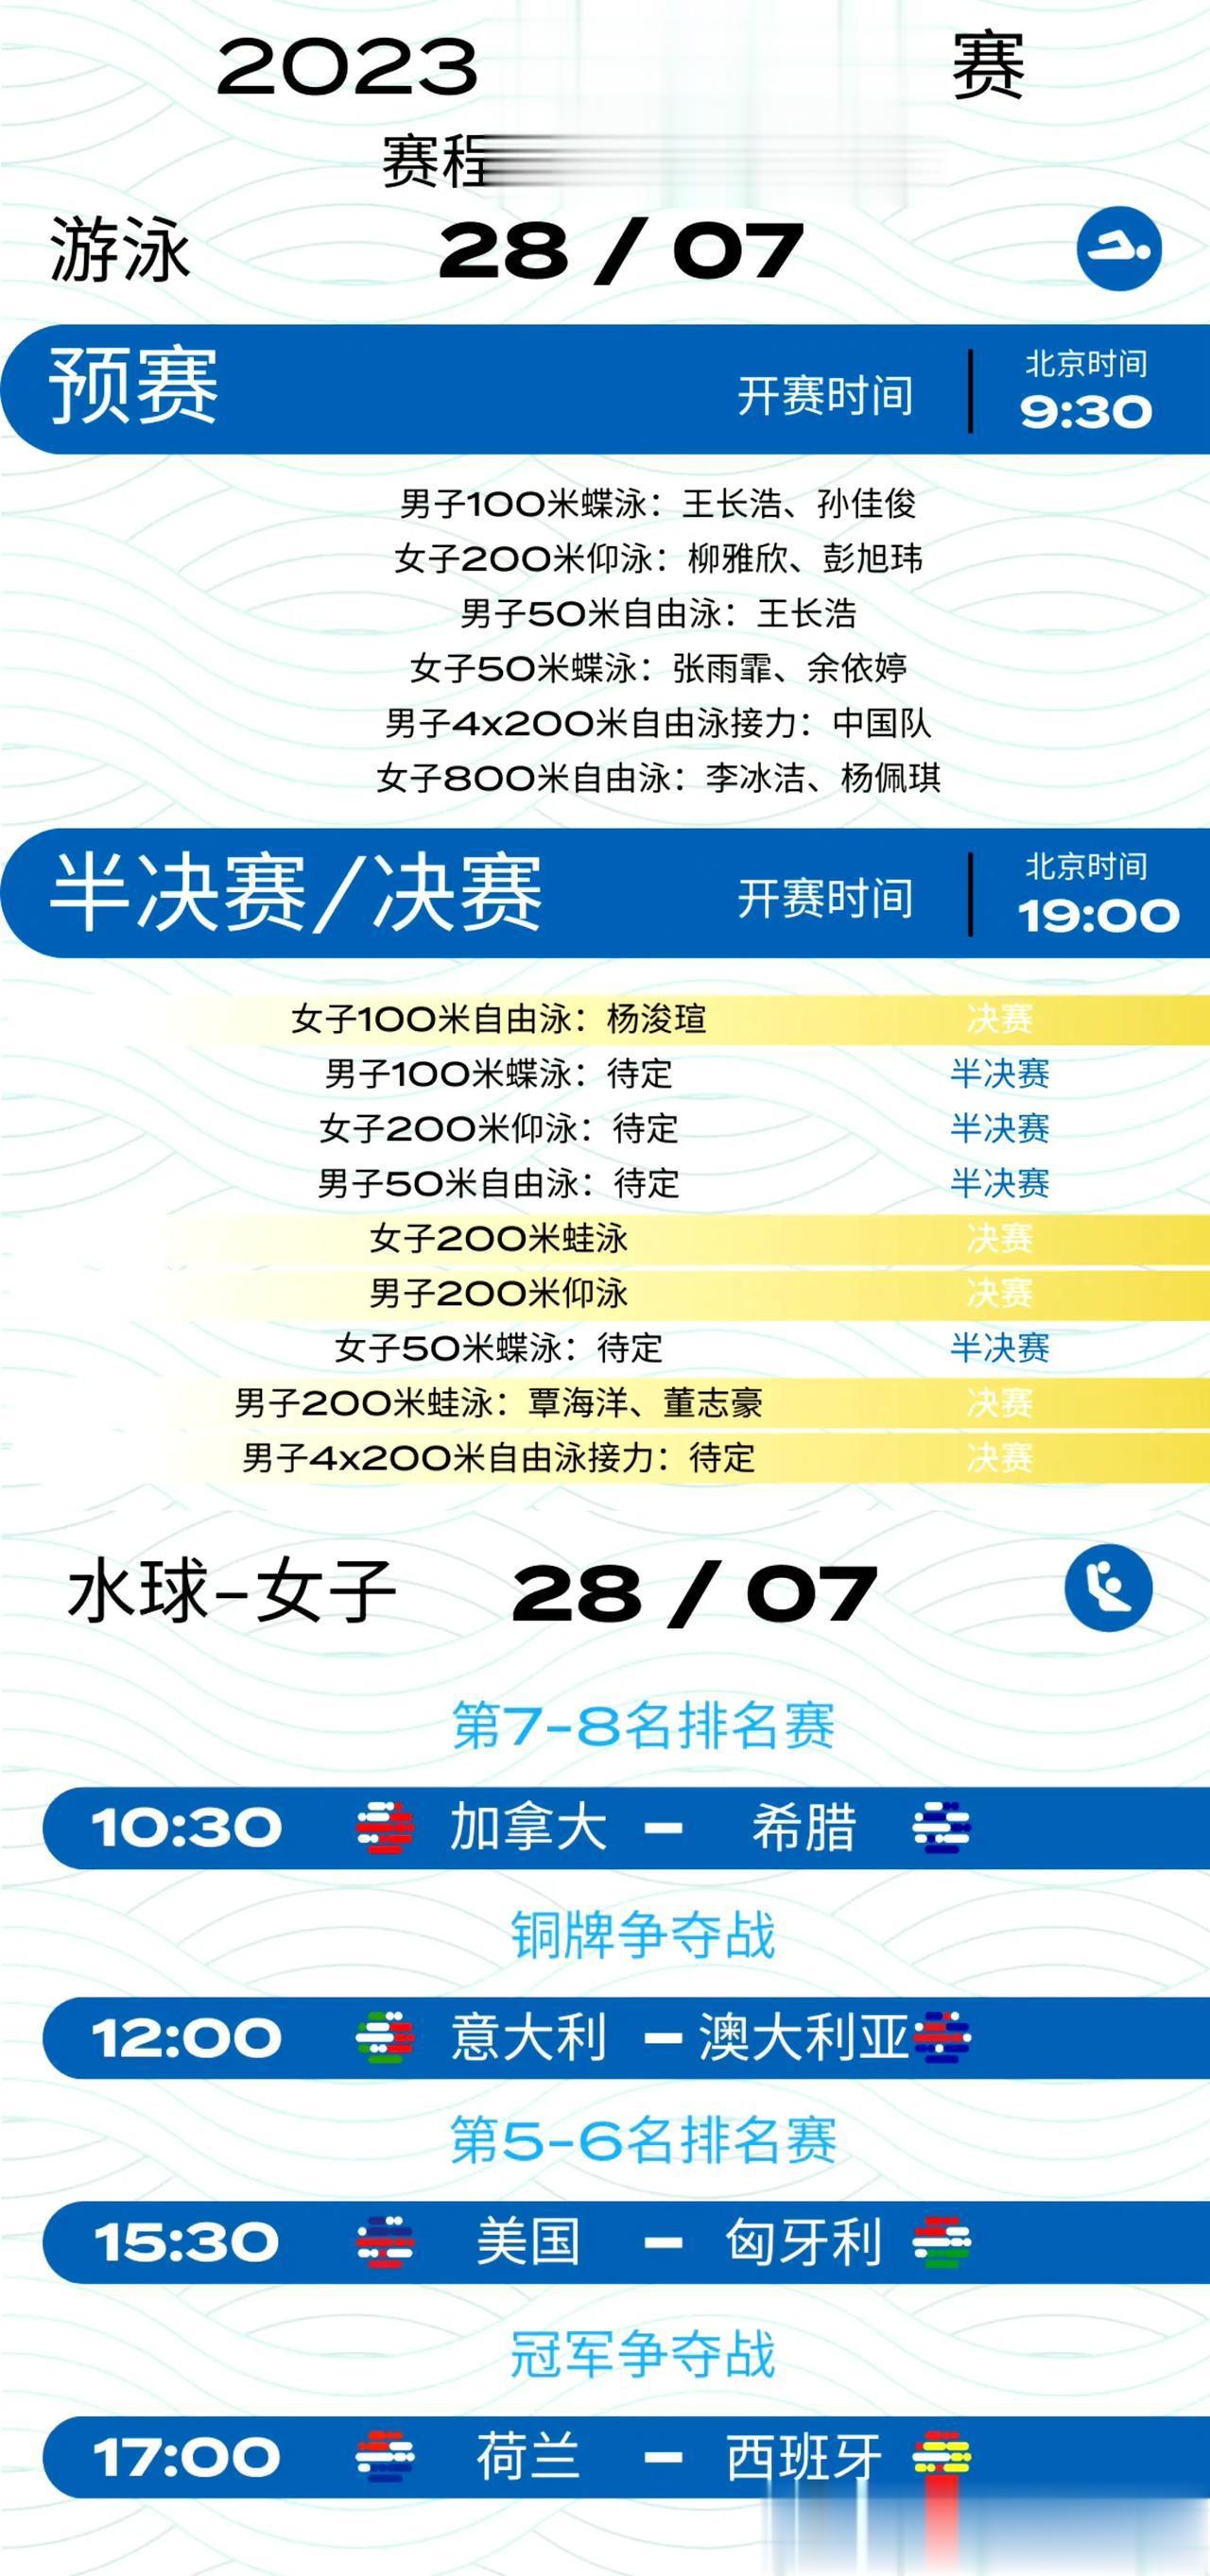 28日（周五）世锦赛中国队赛程预告
杨浚瑄、覃海洋、董志豪冲击金牌
一、预赛：0